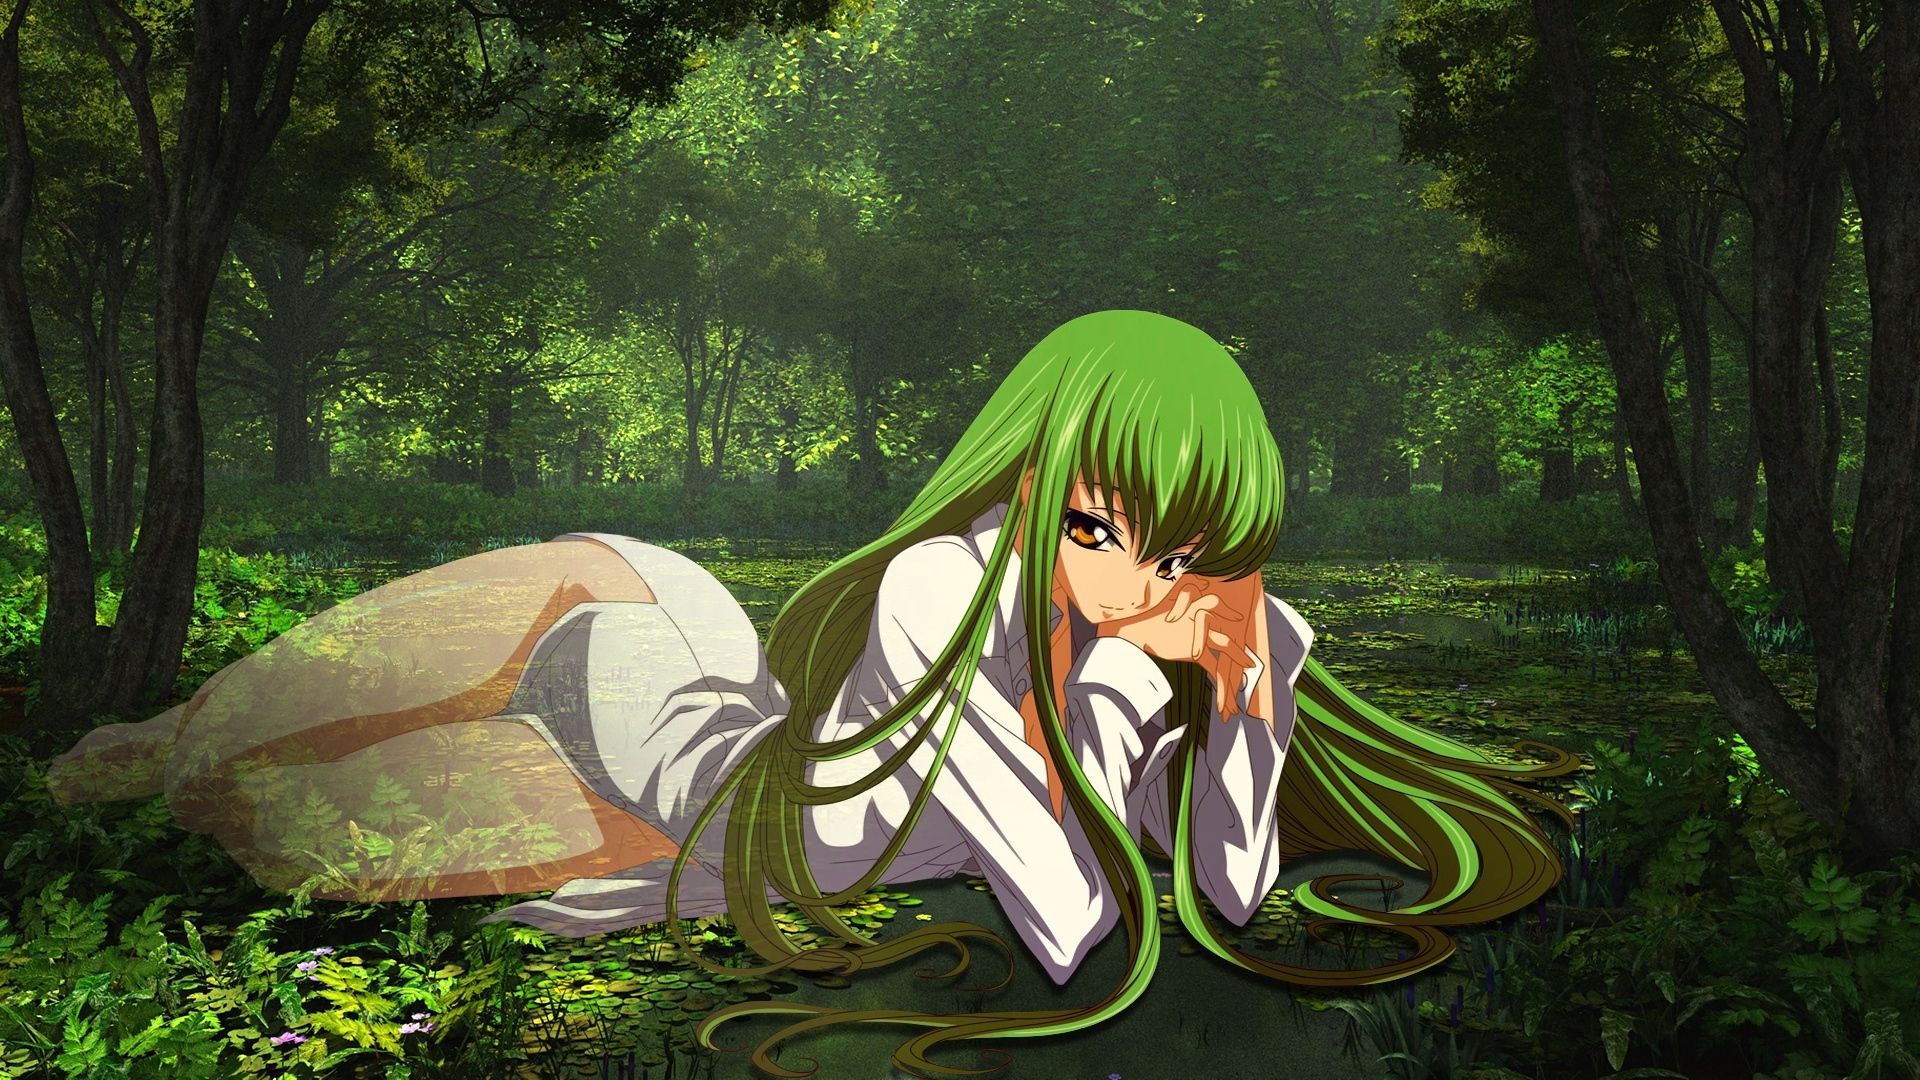 Green Anime Wallpaper. Anime Wallpaper, Beautiful Anime Wallpaper and Awesome Anime Wallpaper